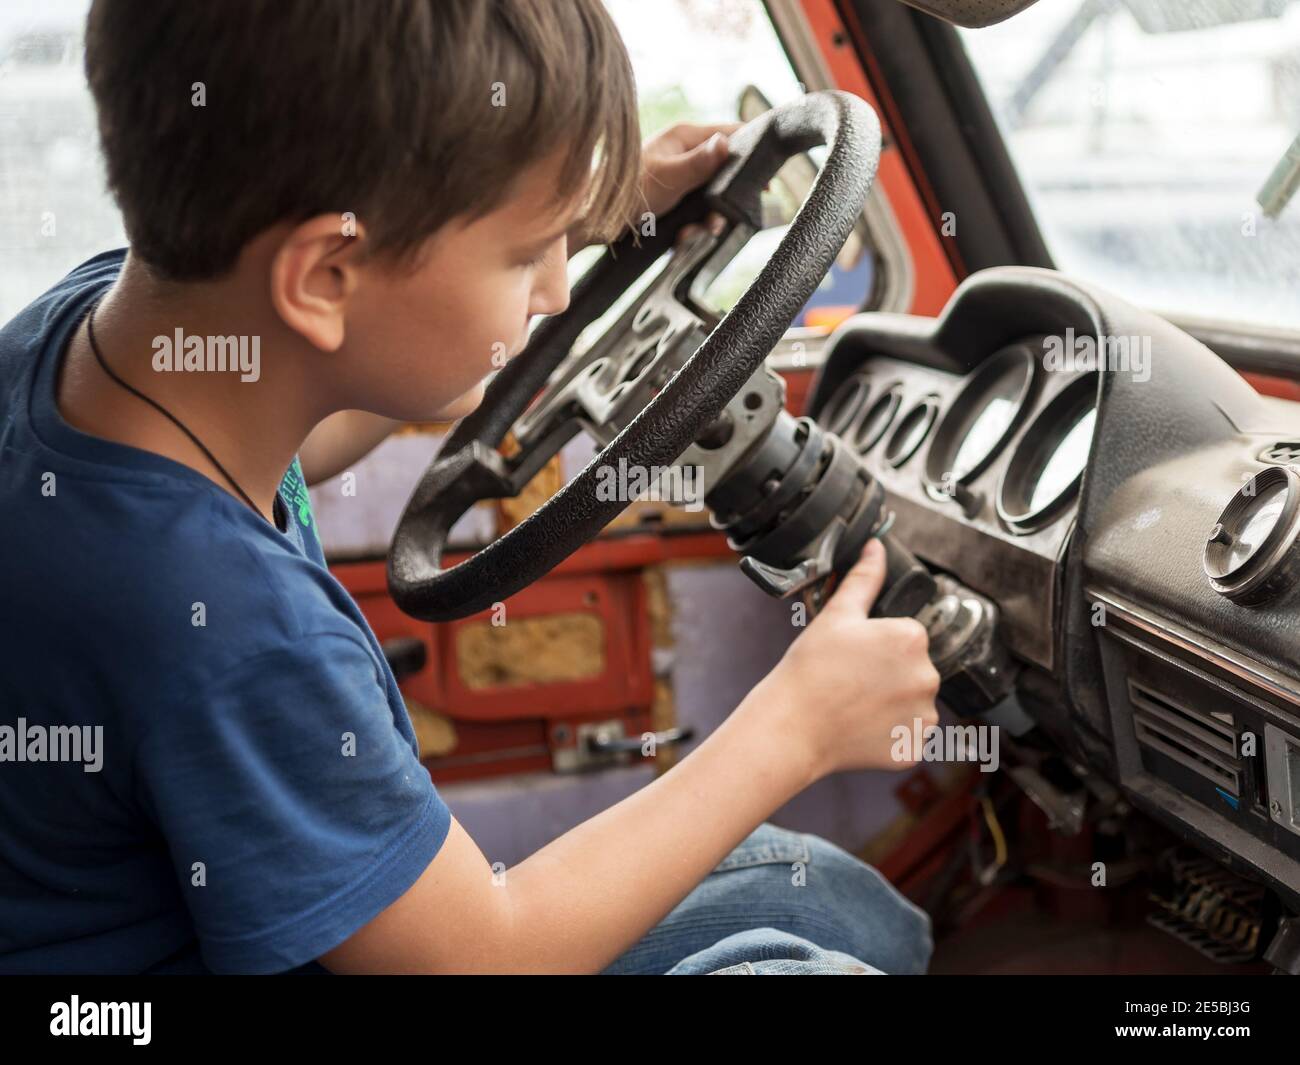 Un garçon de 11 ans joue avec enthousiasme le conducteur derrière le volant d'une vieille voiture abandonnée. Banque D'Images